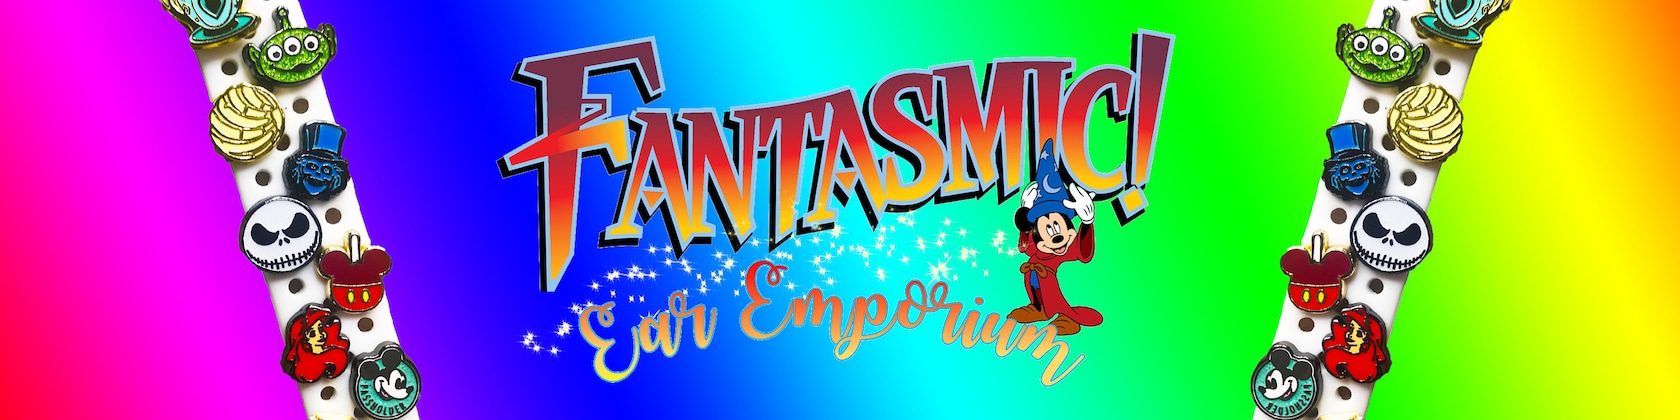 FantasmicEarEmporium -  UK